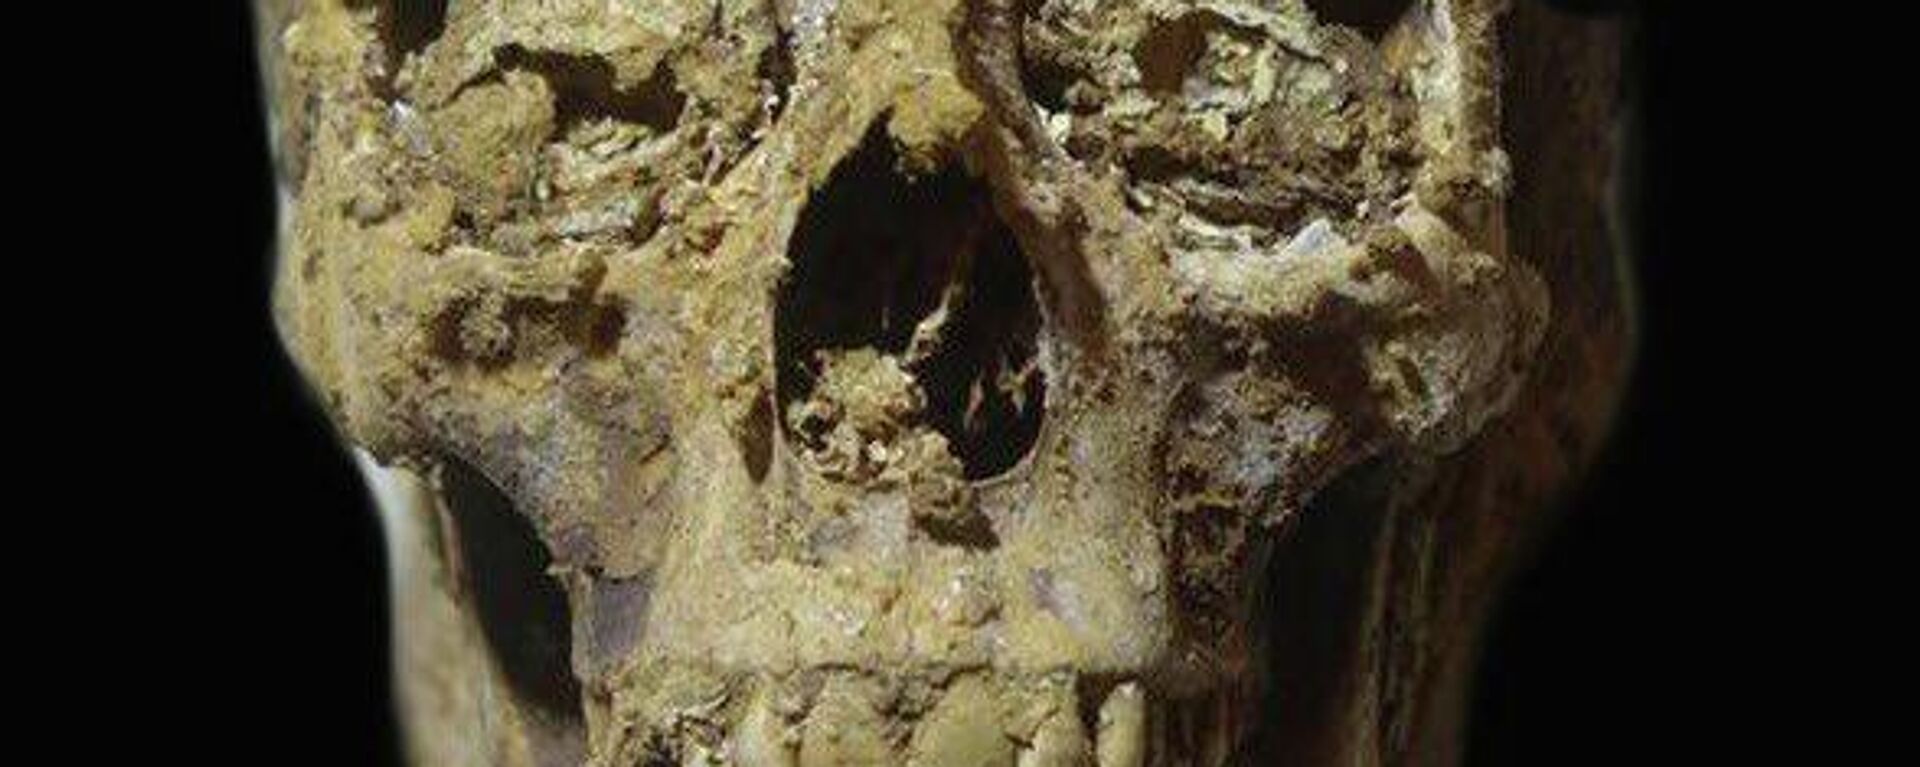 Muestra de uno de los esqueletos encontrados por los arqueólogos en Egipto - Sputnik Mundo, 1920, 07.12.2021